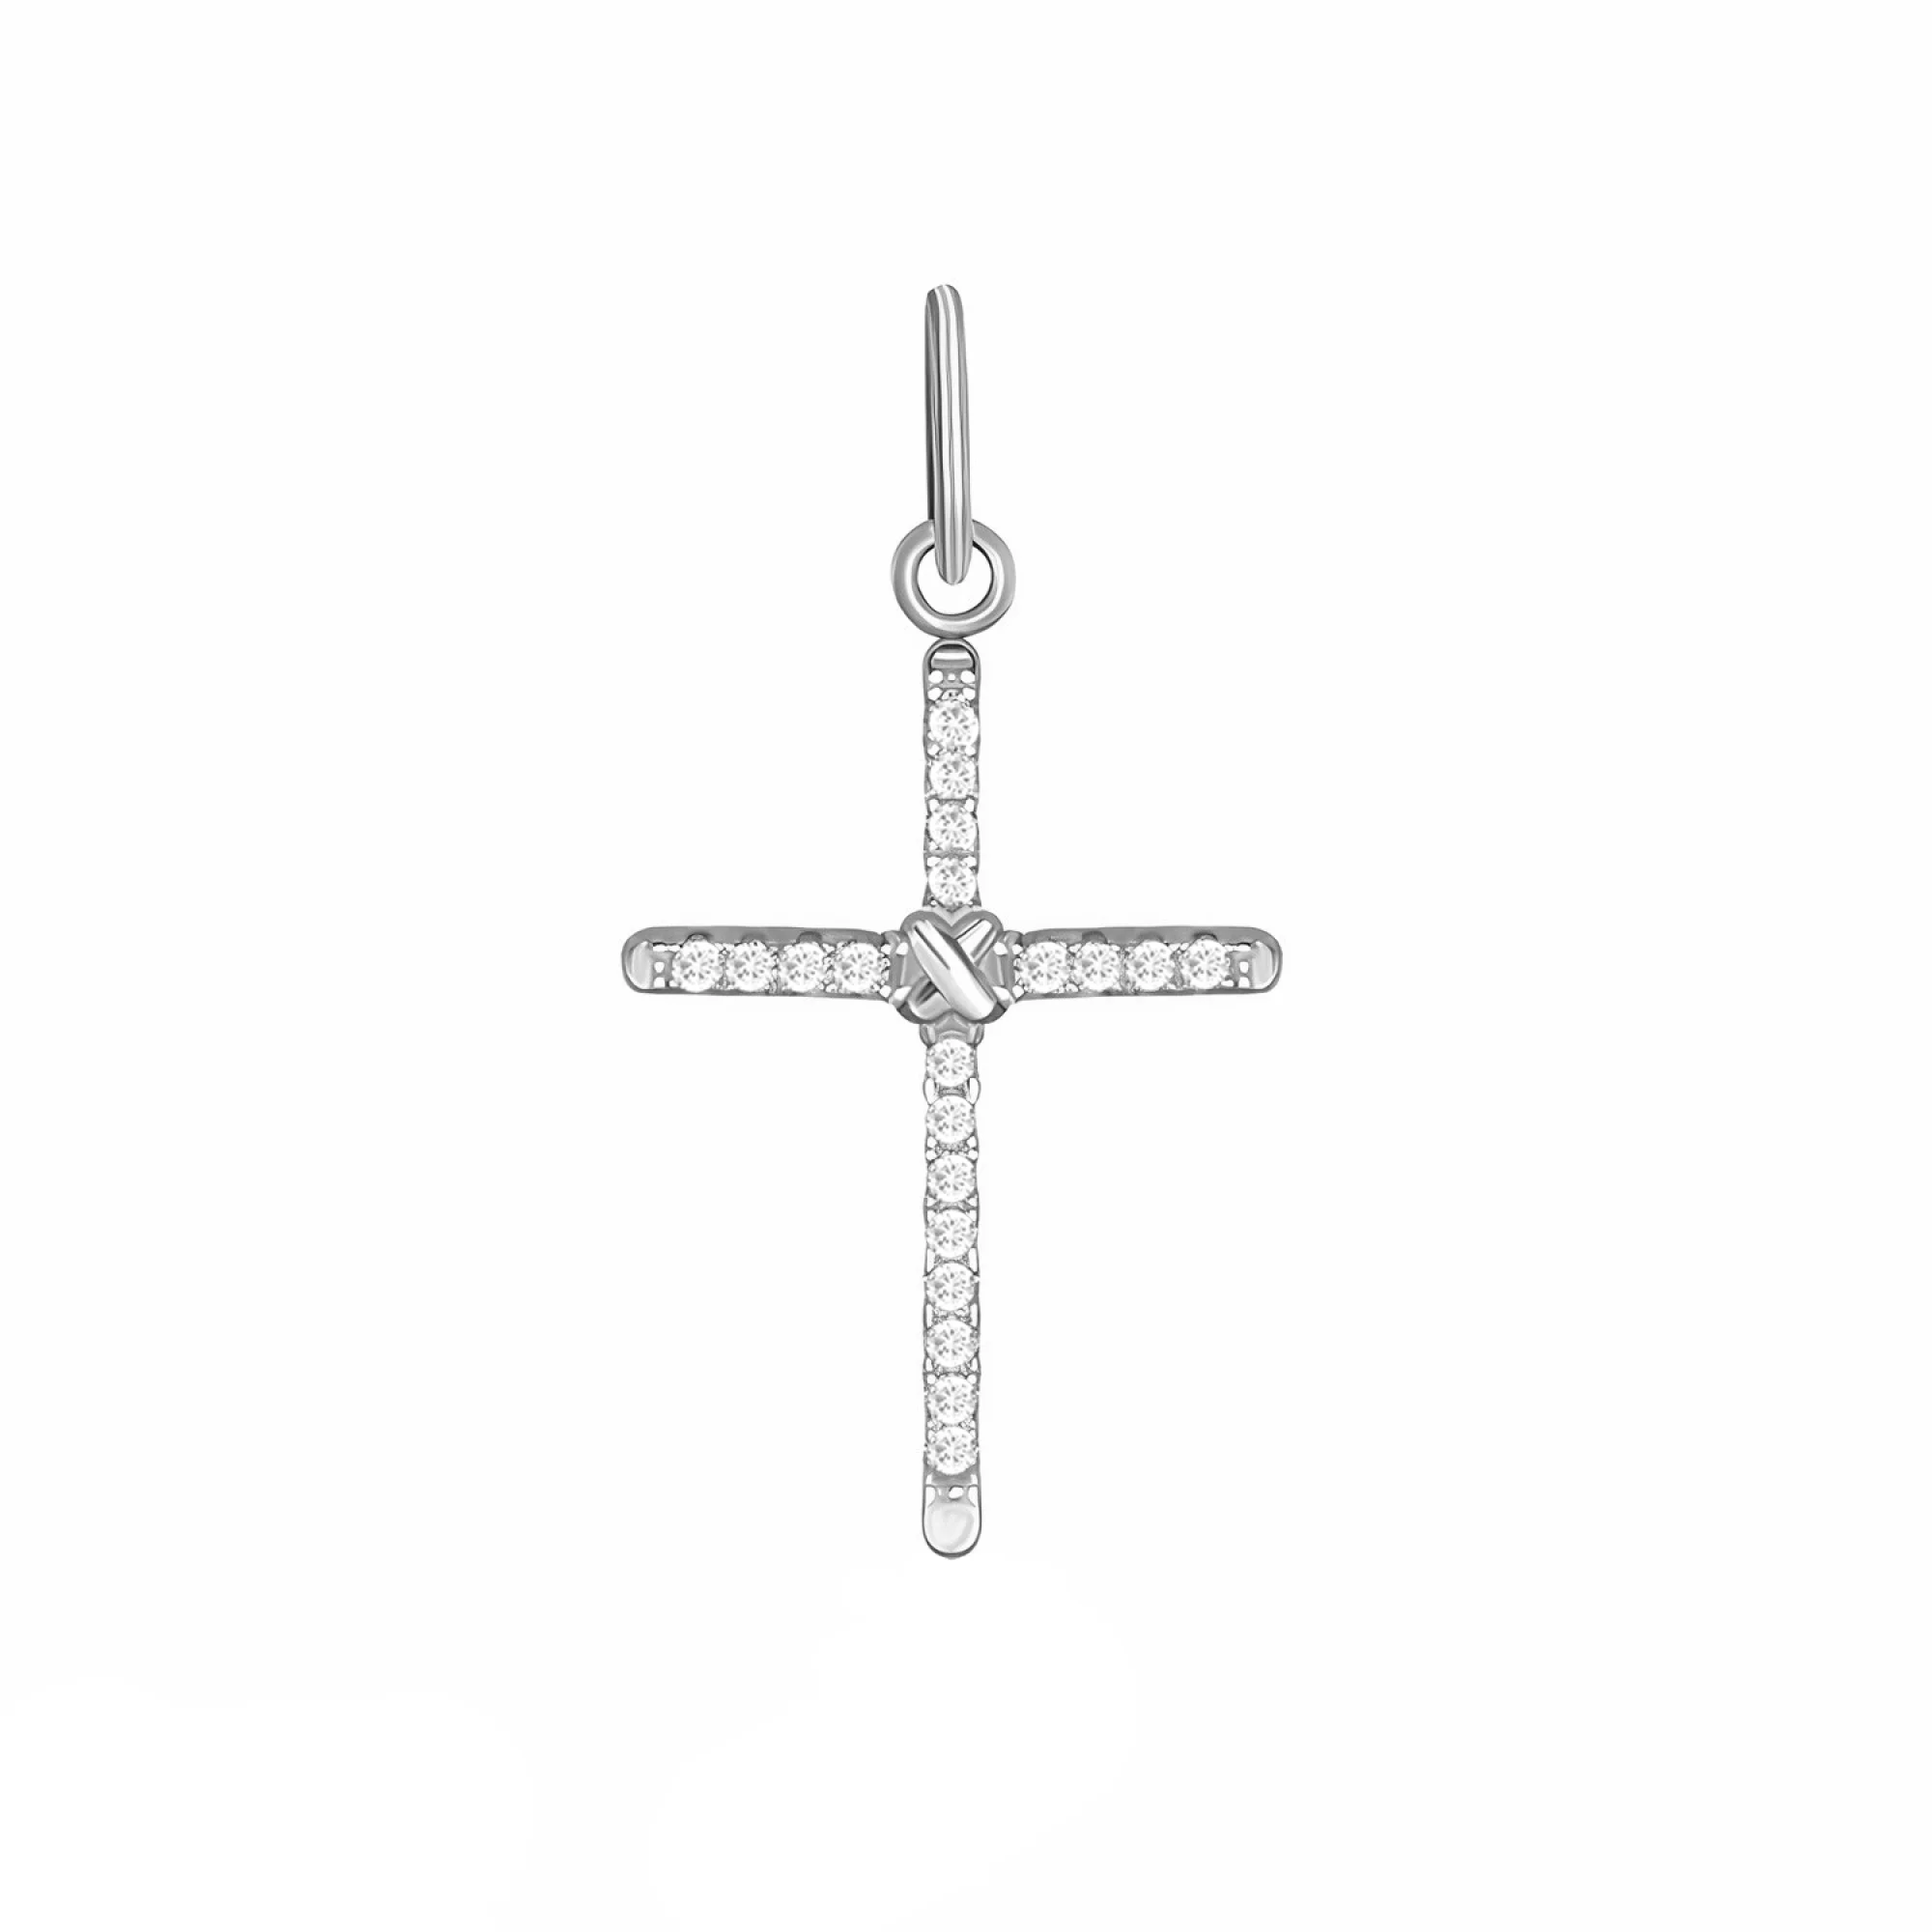 Крестик из серебра с фианитами - 1517198 – изображение 1